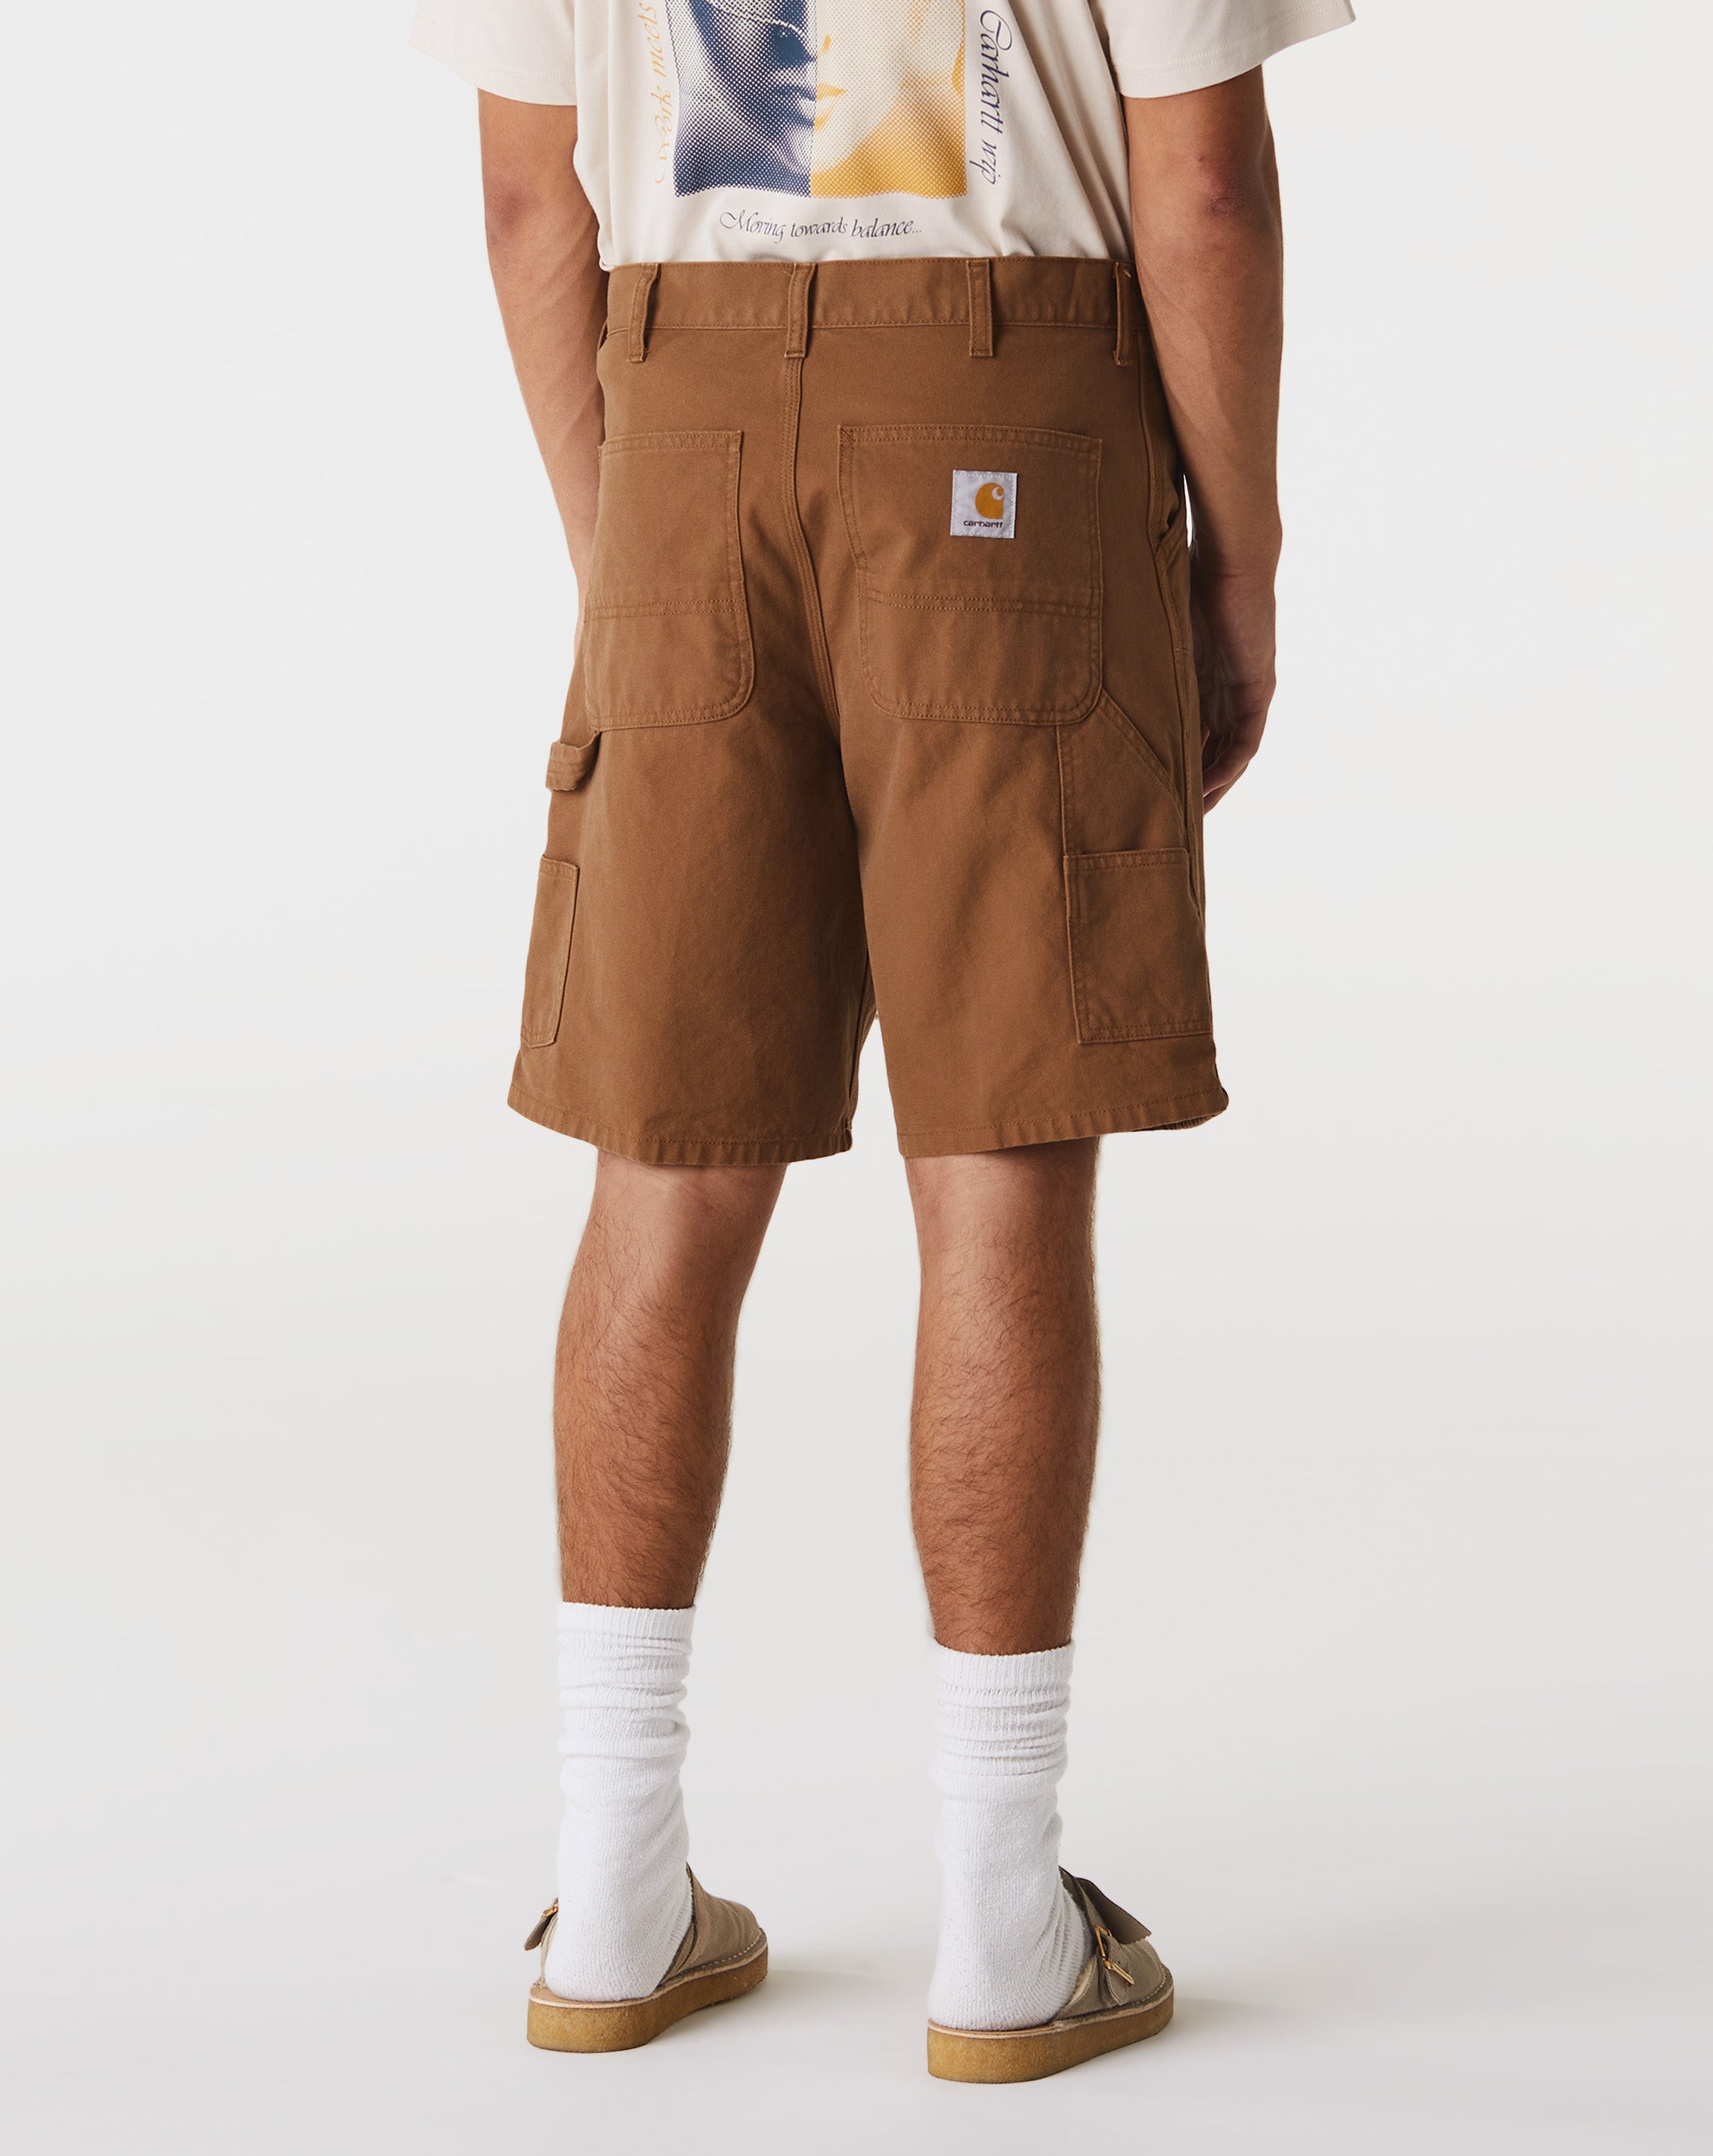 Carhartt WIP Waters Long Sleeve Woven Pocket shirt  - Cheap Urlfreeze Jordan outlet